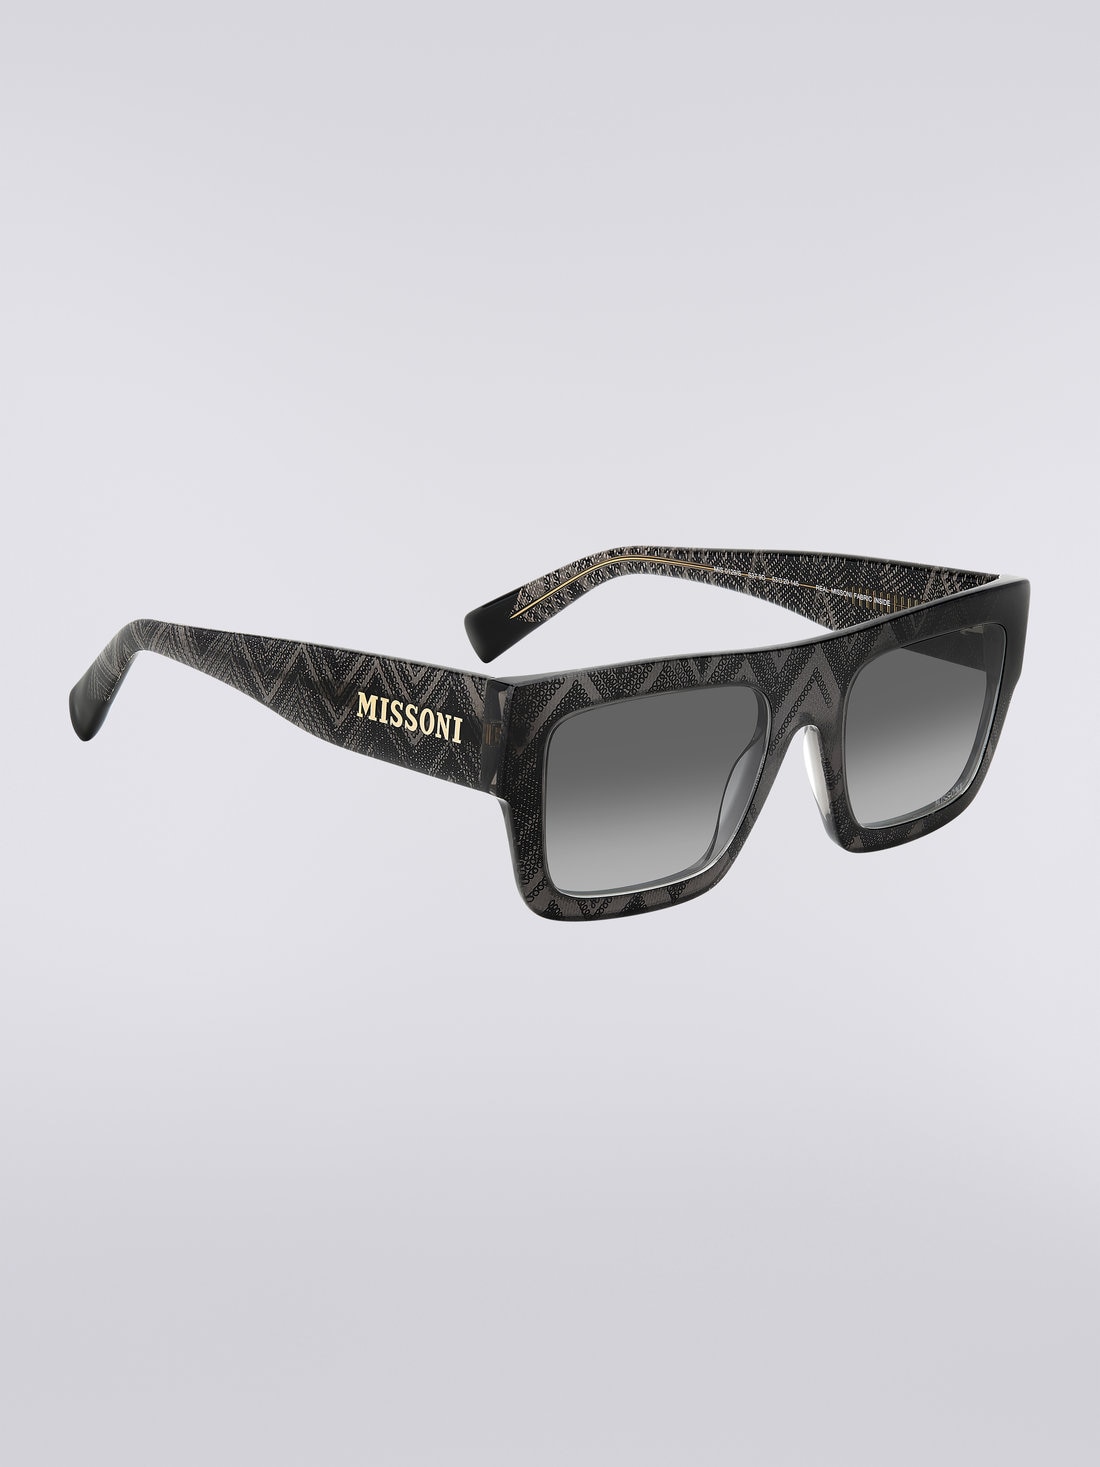 Missoni Dna Acetate Sunglasses, Multicoloured  - 8051575840272 - 2